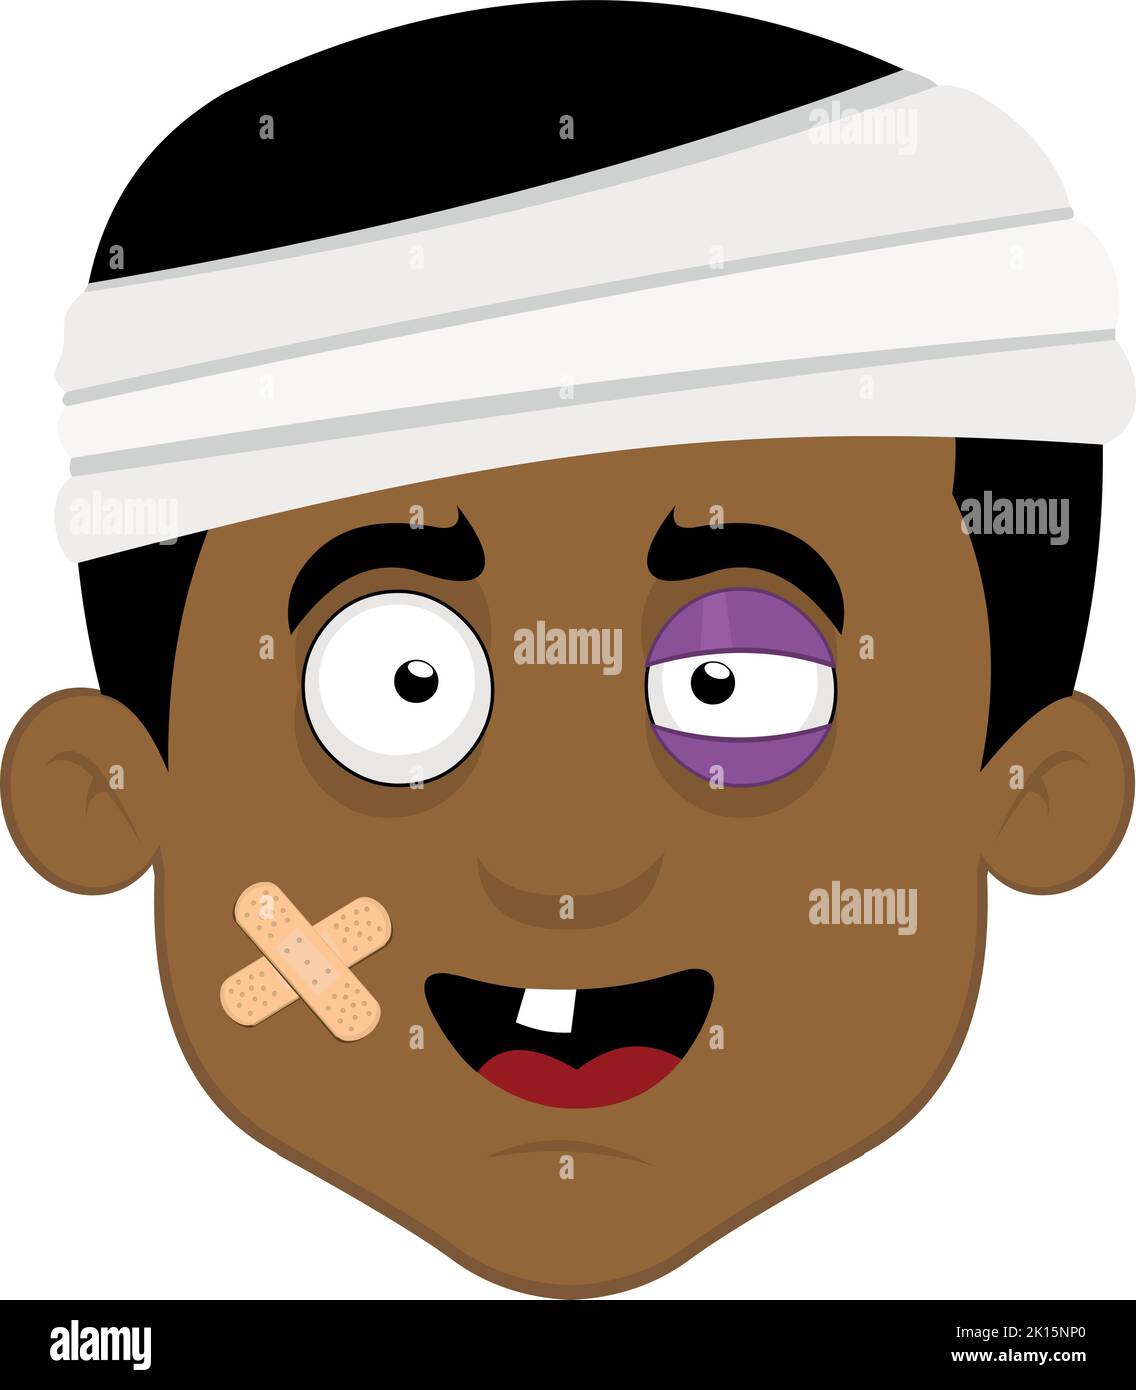 Illustration vectorielle de la tête d'un homme blessé, avec un bandage sur sa tête, un œil noir, des bandes adhésives sur son visage et une dent unique Illustration de Vecteur